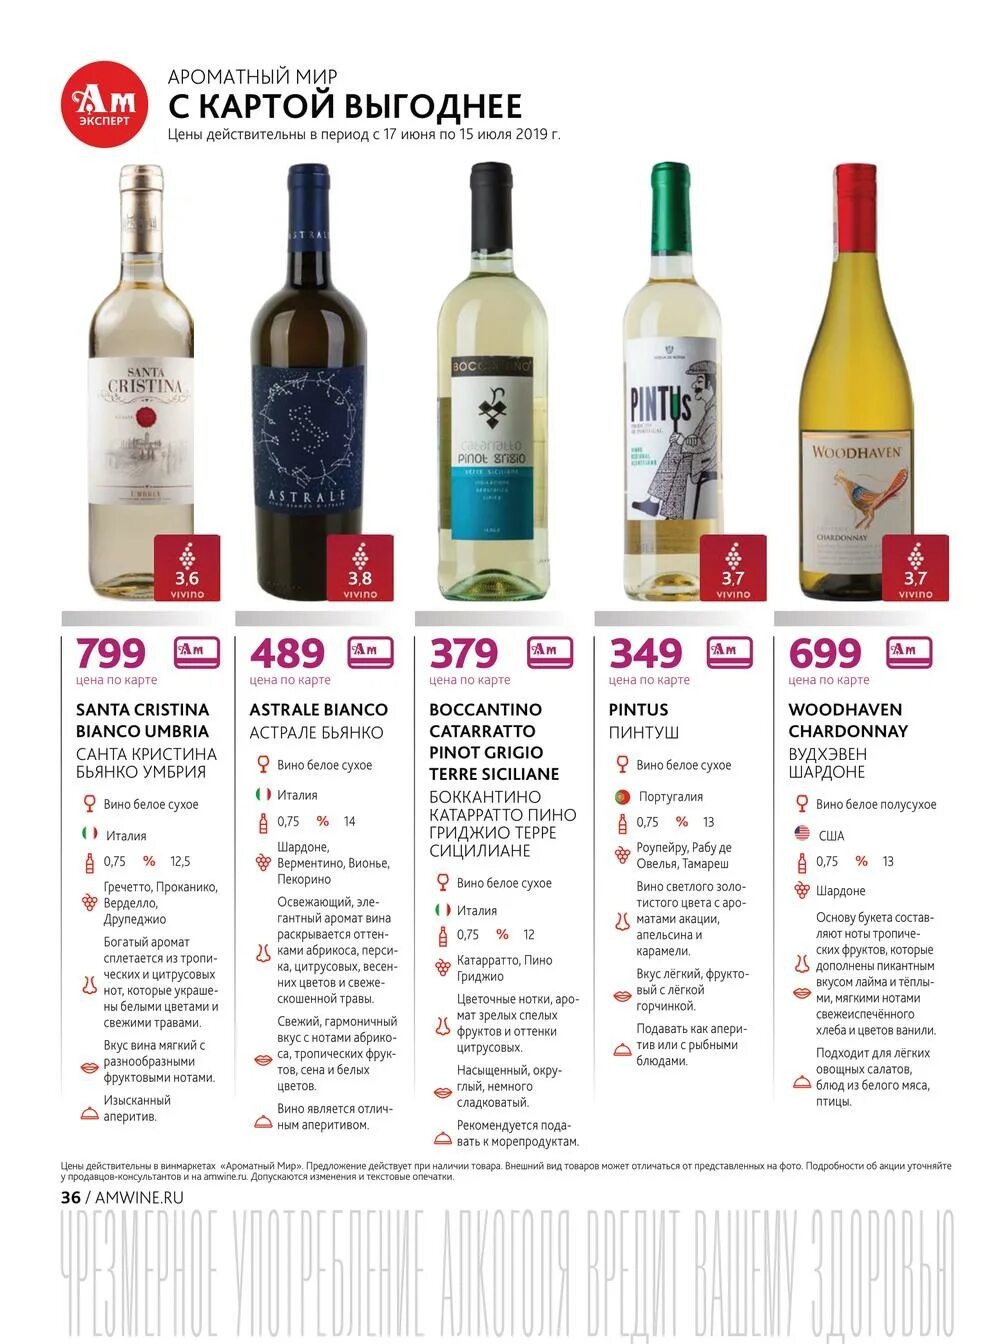 Сухое вино цена. Вино белое сухое ароматный мир. Вино Акура ароматный мир. Вино Португалия ароматный мир. Португальское вино в ароматном мире.